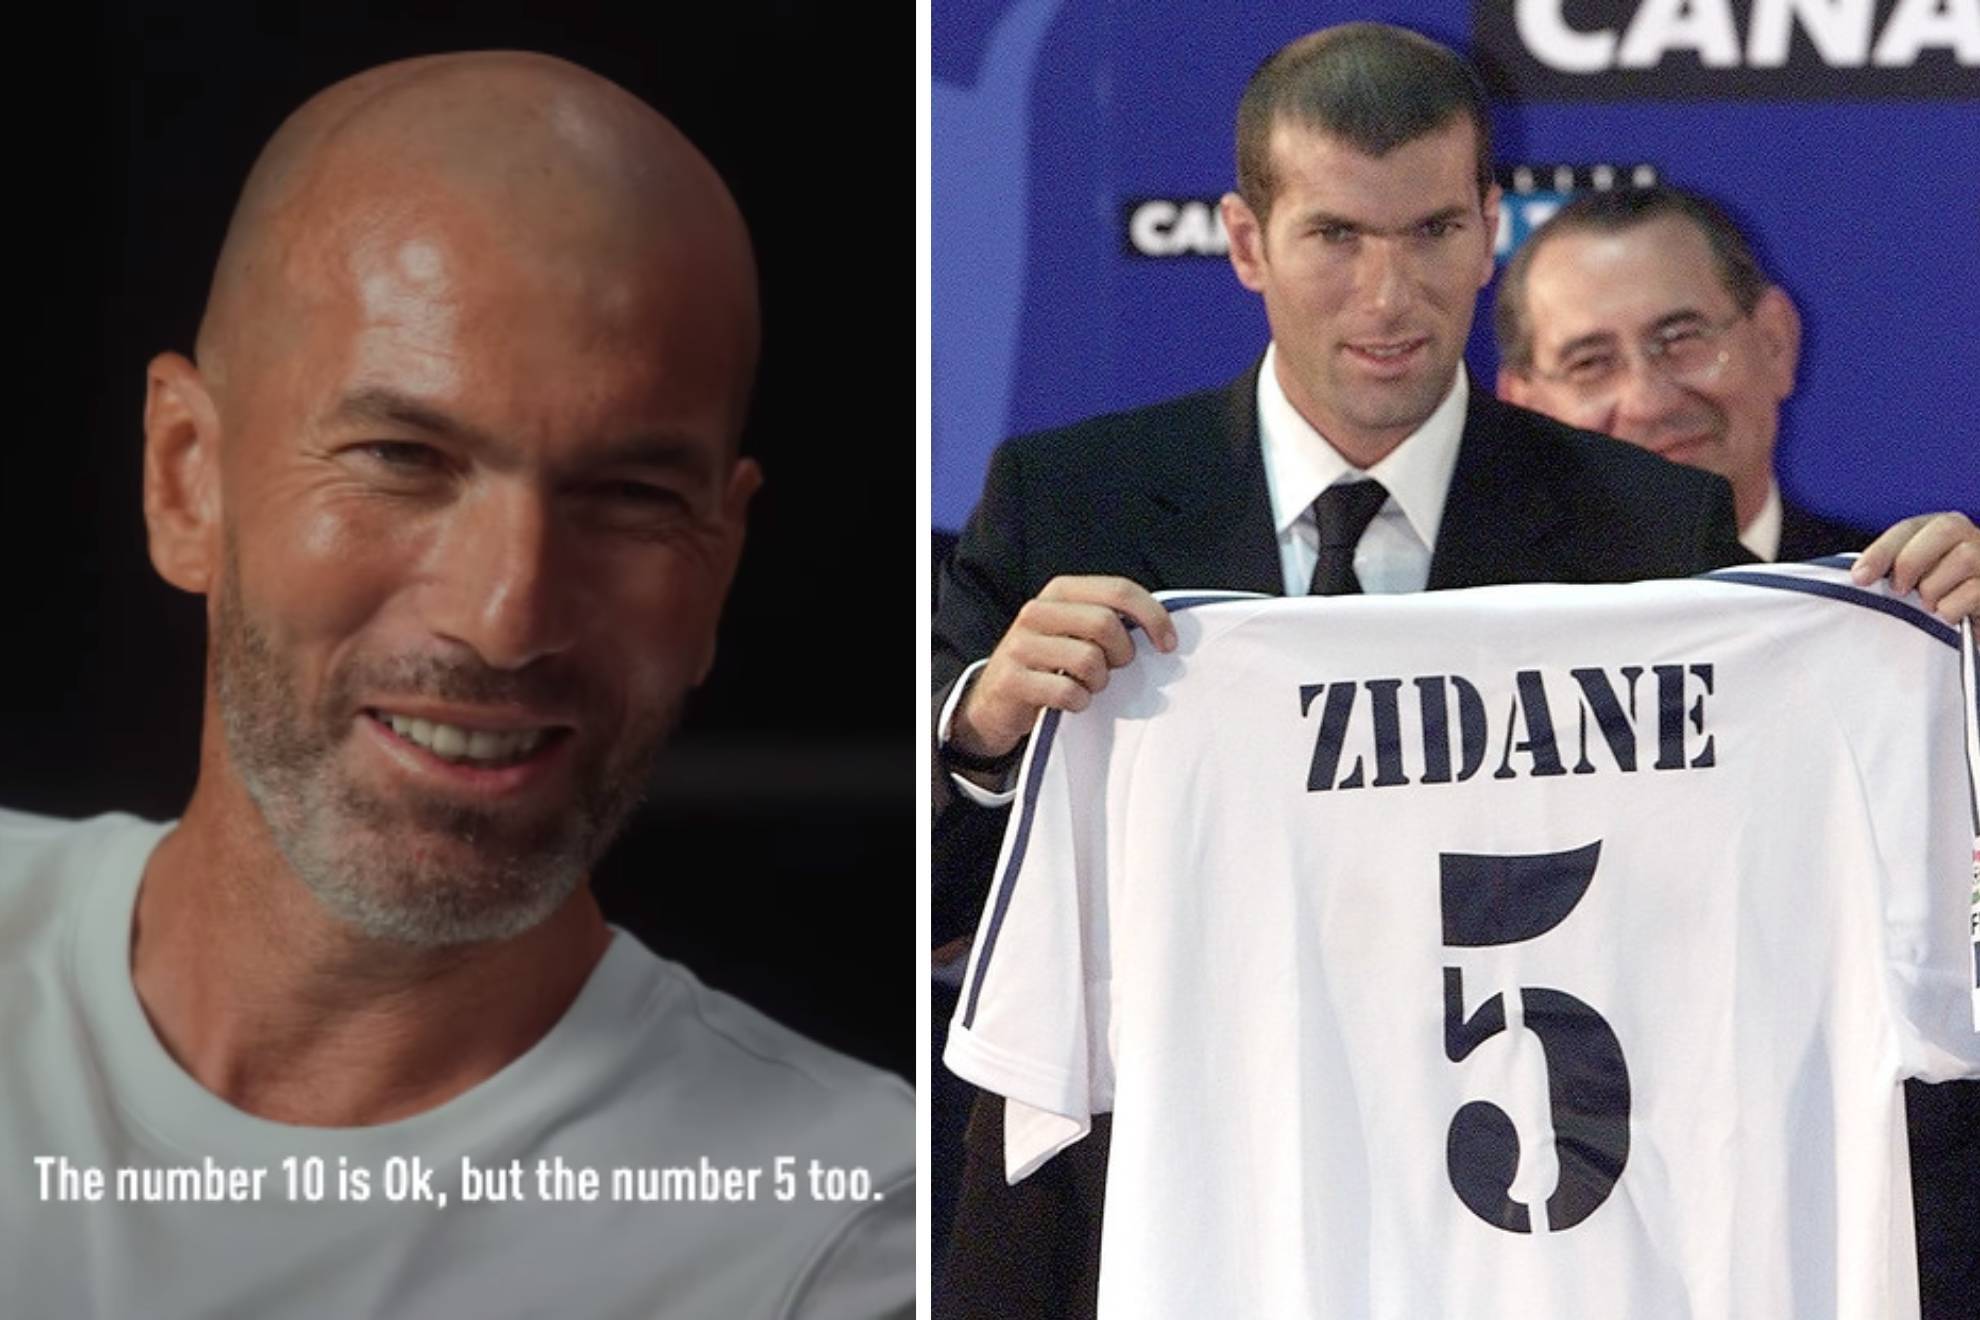 La intrahistoria del 5 de Zidane en el Madrid: imposici�n de Florentino y herencia de S�nchez